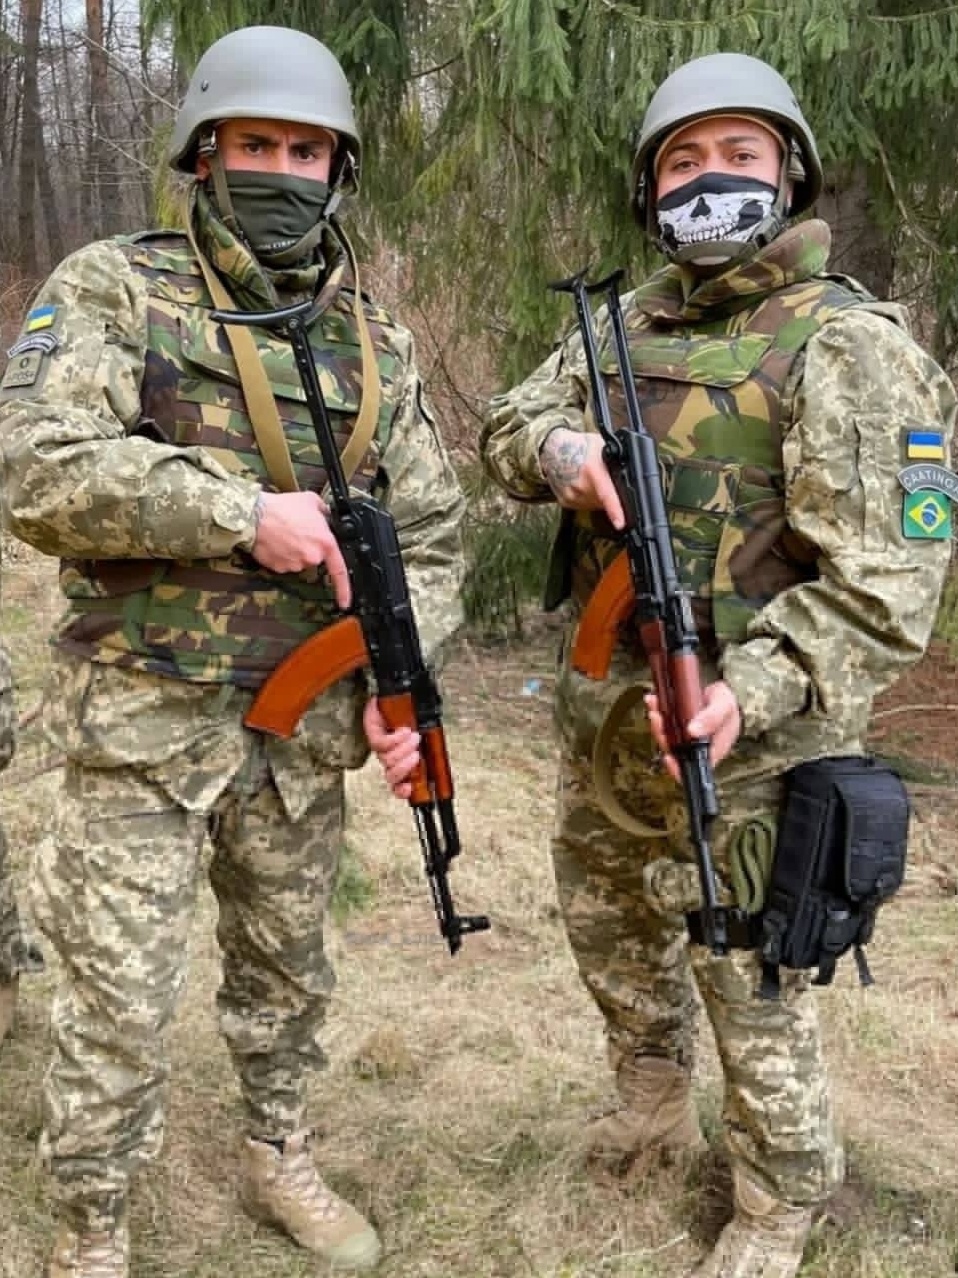 À CNN, brasileiro relata que militares usavam roupas do exército